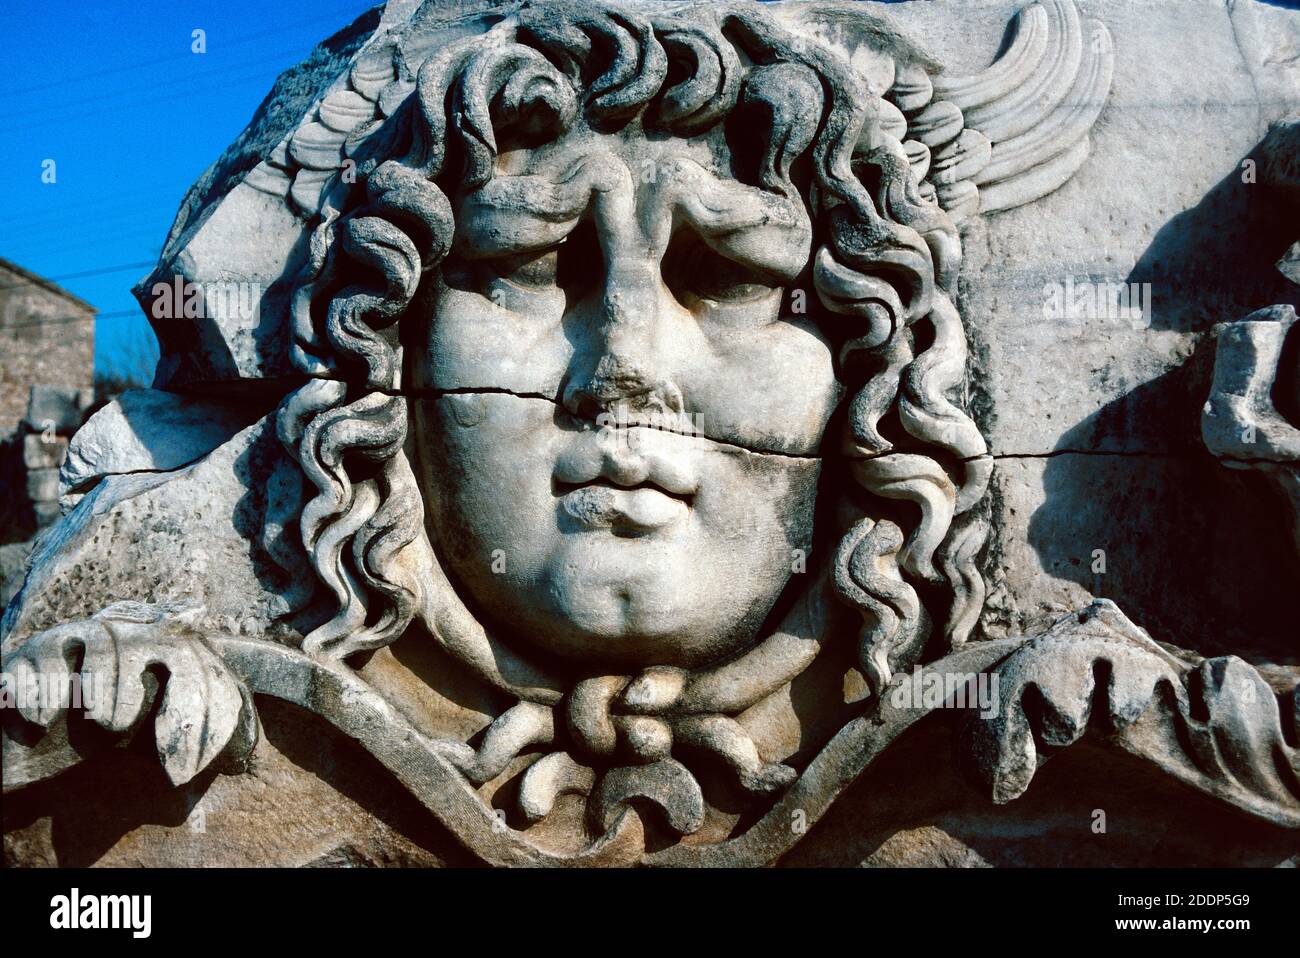 Sculpture en marbre de la tête et du visage du géant Medusa Temple d'Apollon ou Temple d'Apollon dans l'antique ruiné Ville de Didyma Didim Turquie Banque D'Images